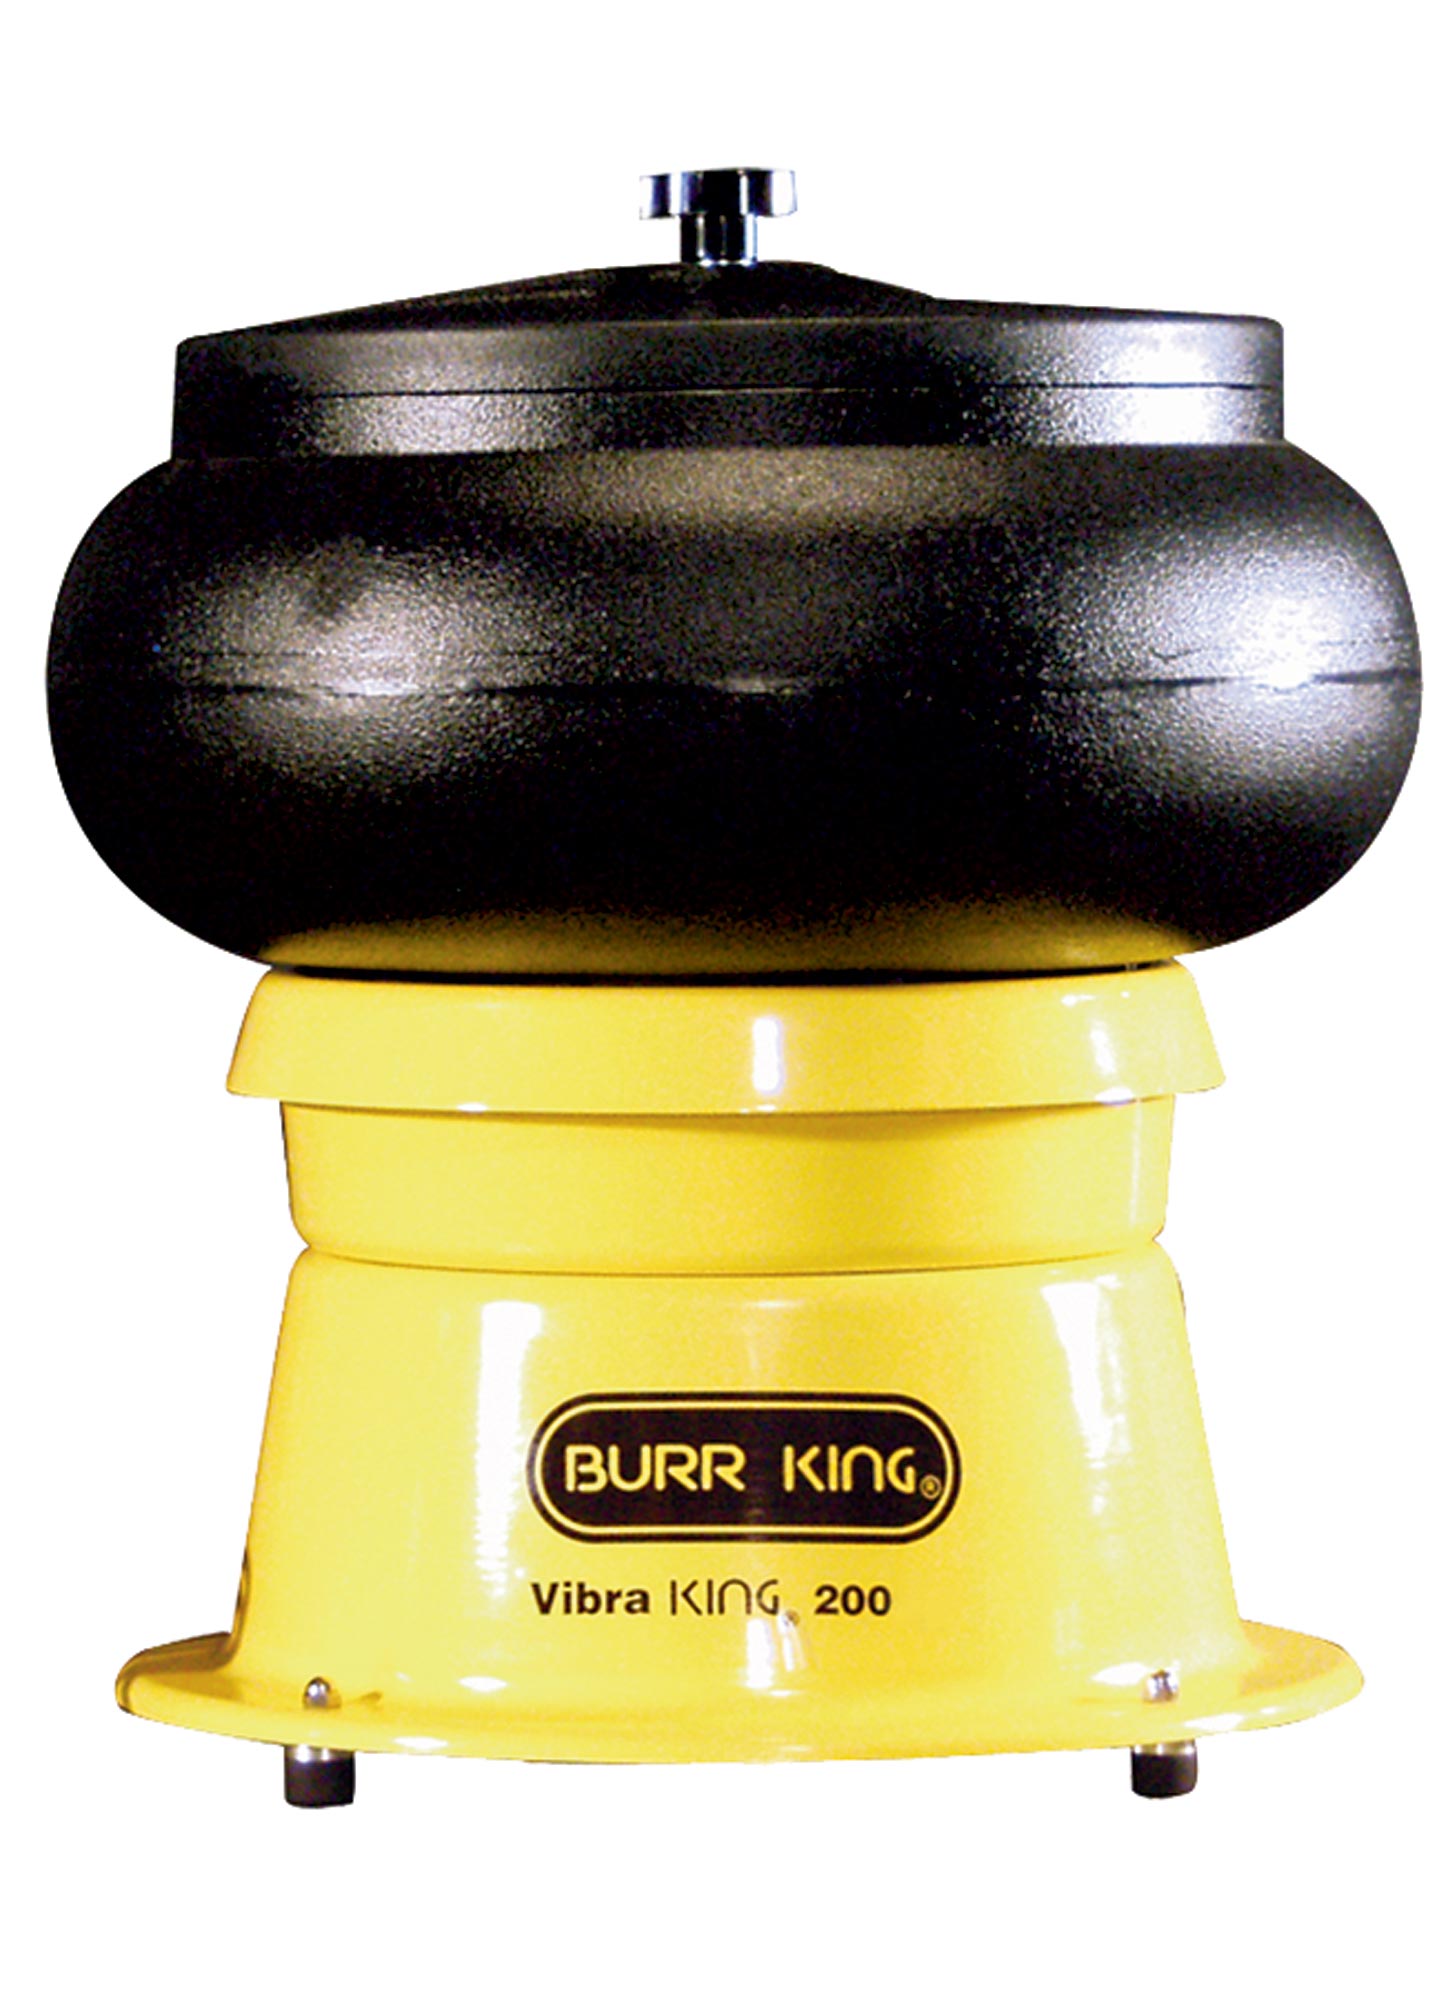 Burr King VibraKing 200